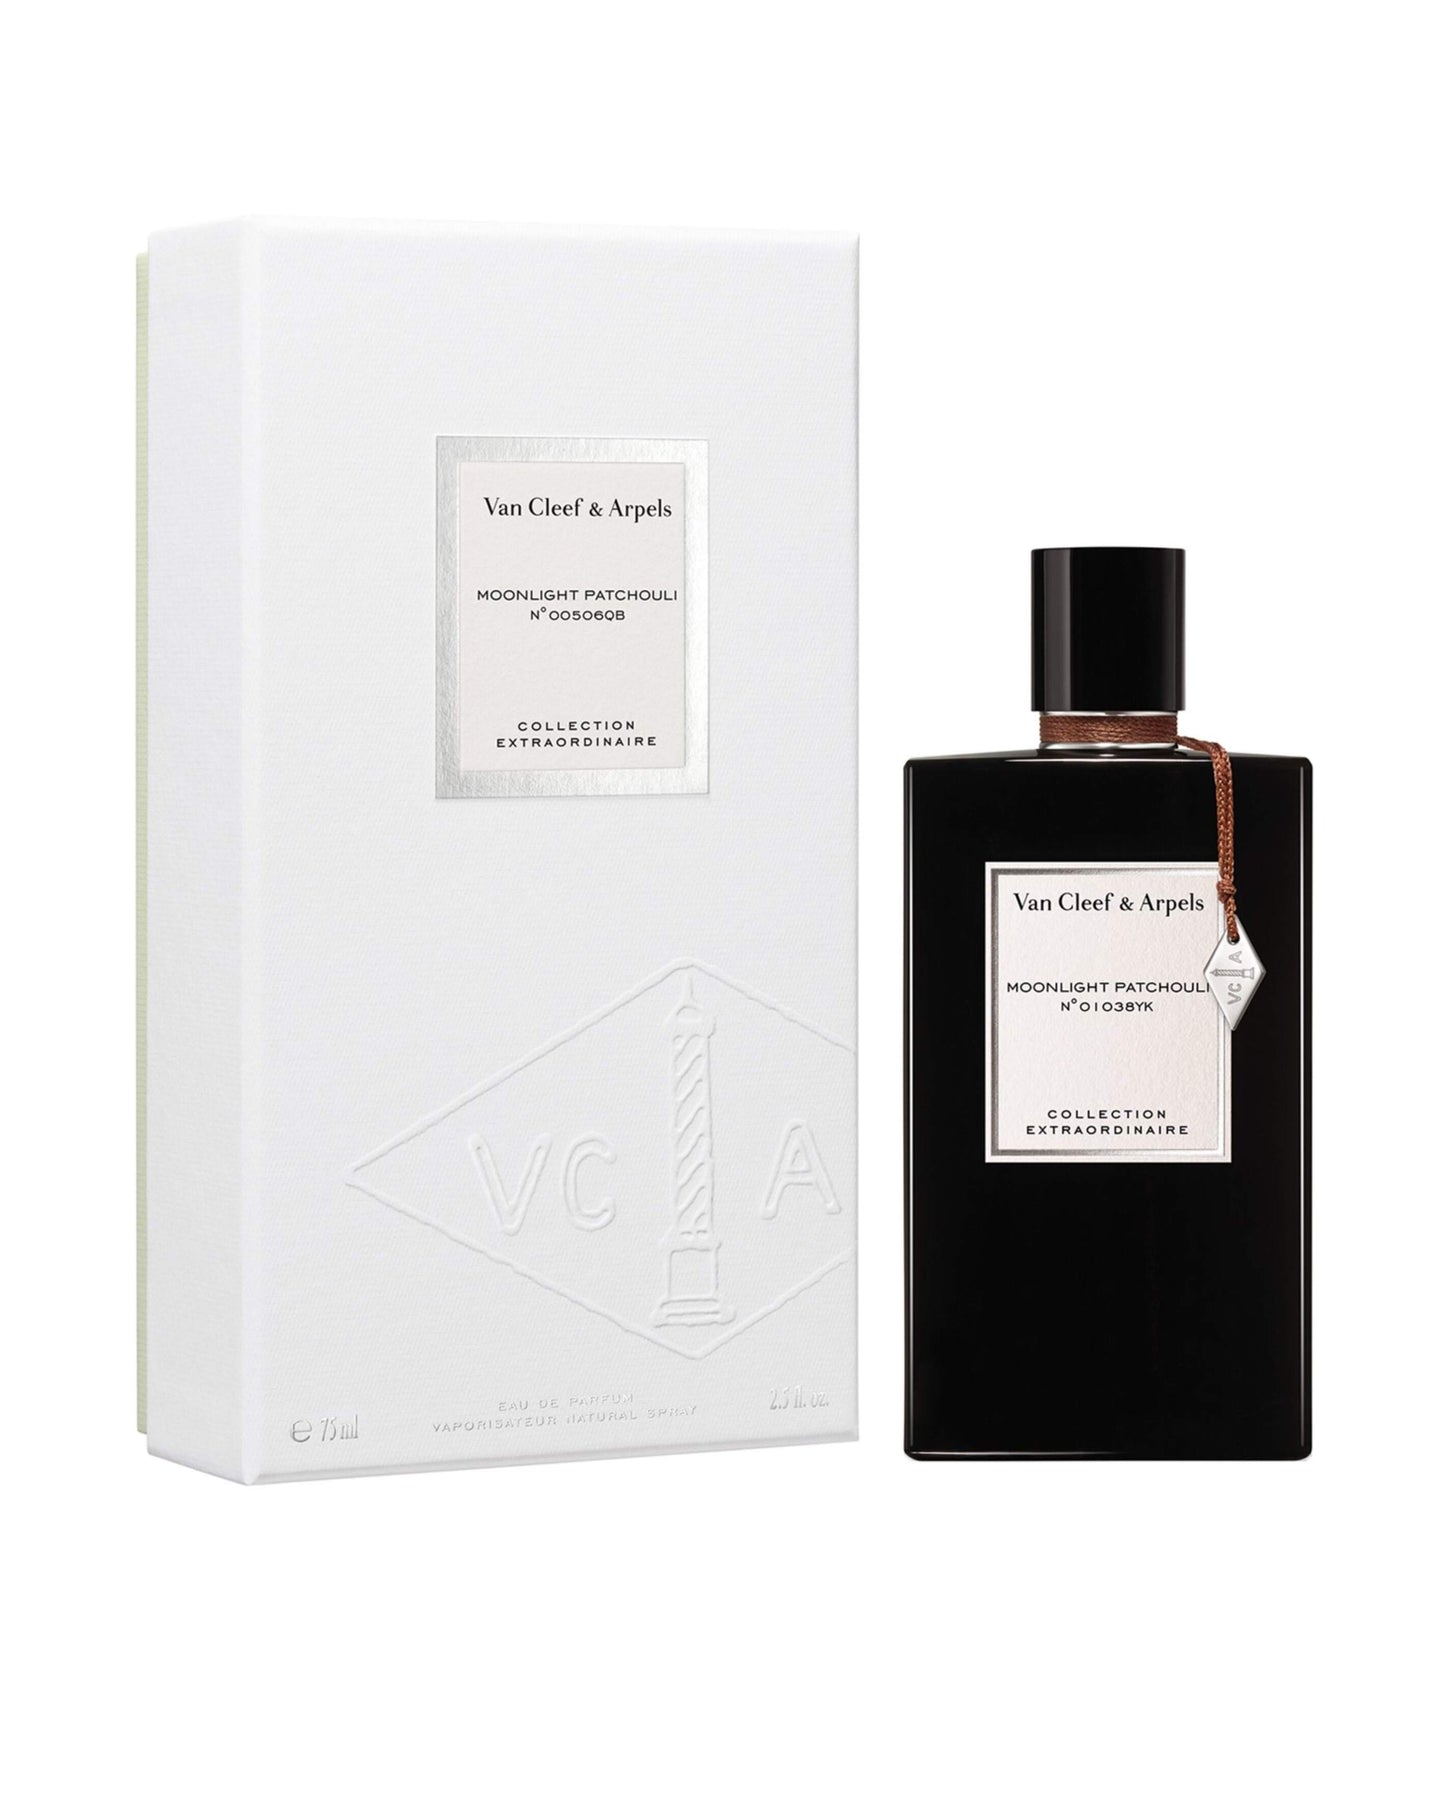 VAN CLEEF & ARPELS – MOONLIGHT PATCHOULI–foryou–prix de foryou parfumurie en ligne–vente de parfum original au Maroc–prix de foryou parfum